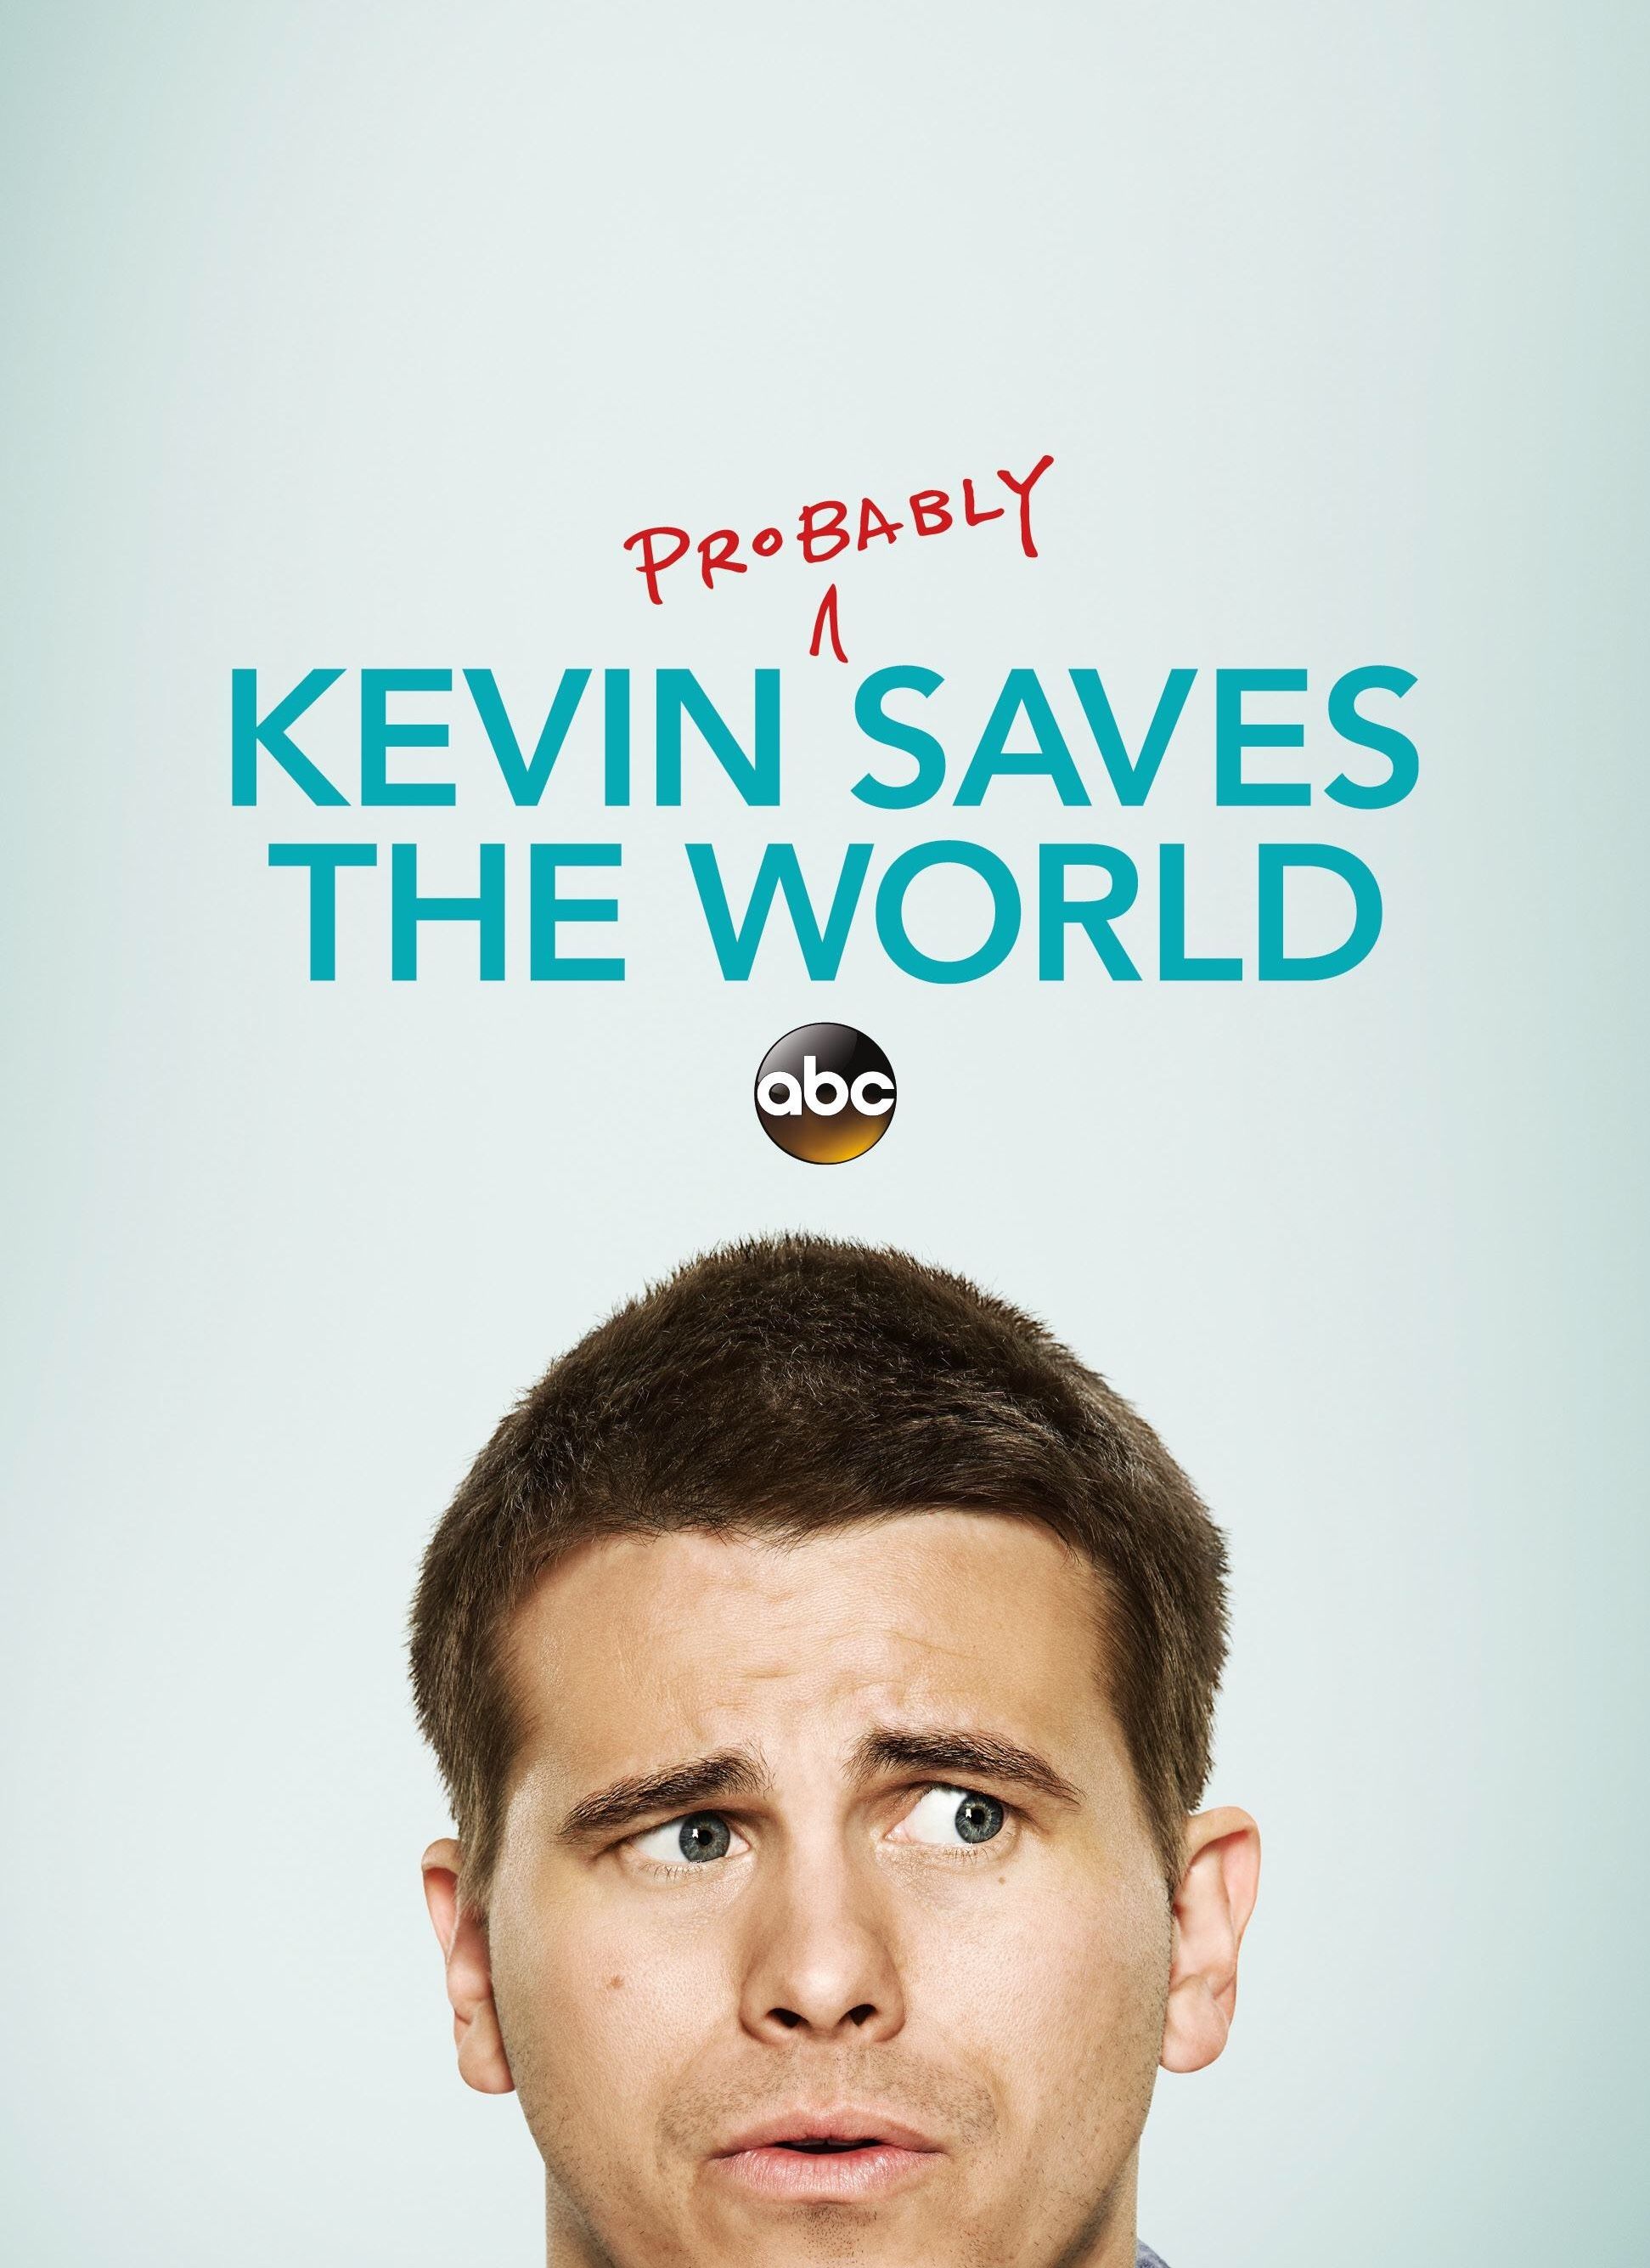 Kevin (Probably) Saves the World ne zaman